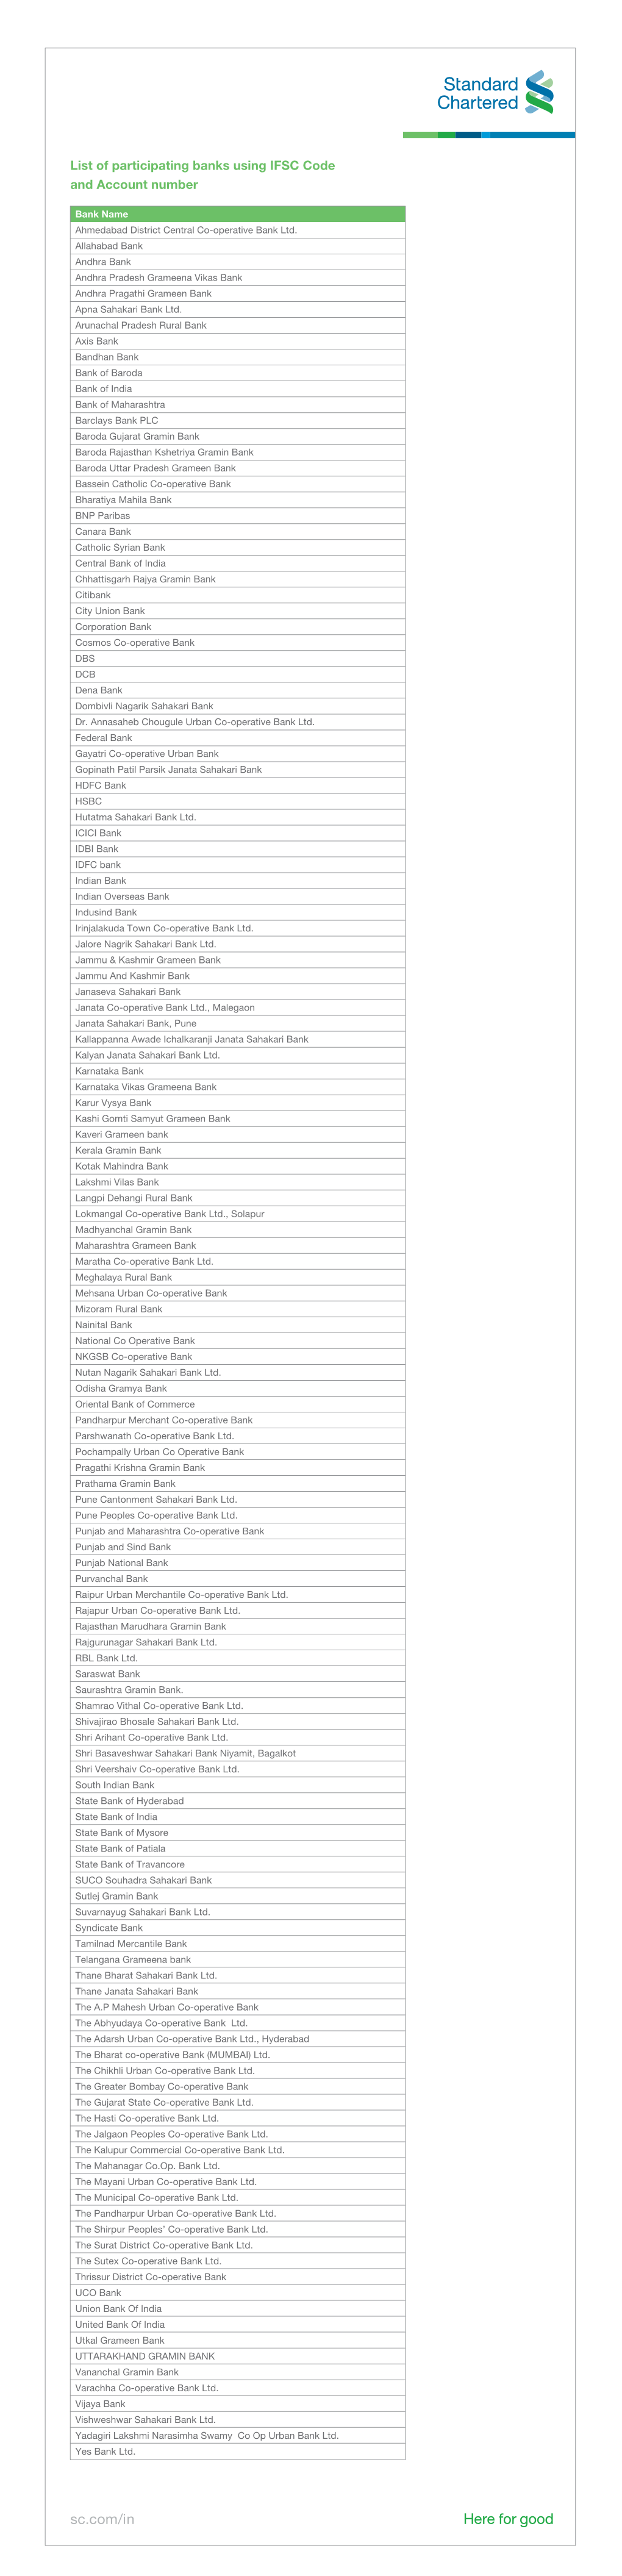 IMPS Bank List Copy